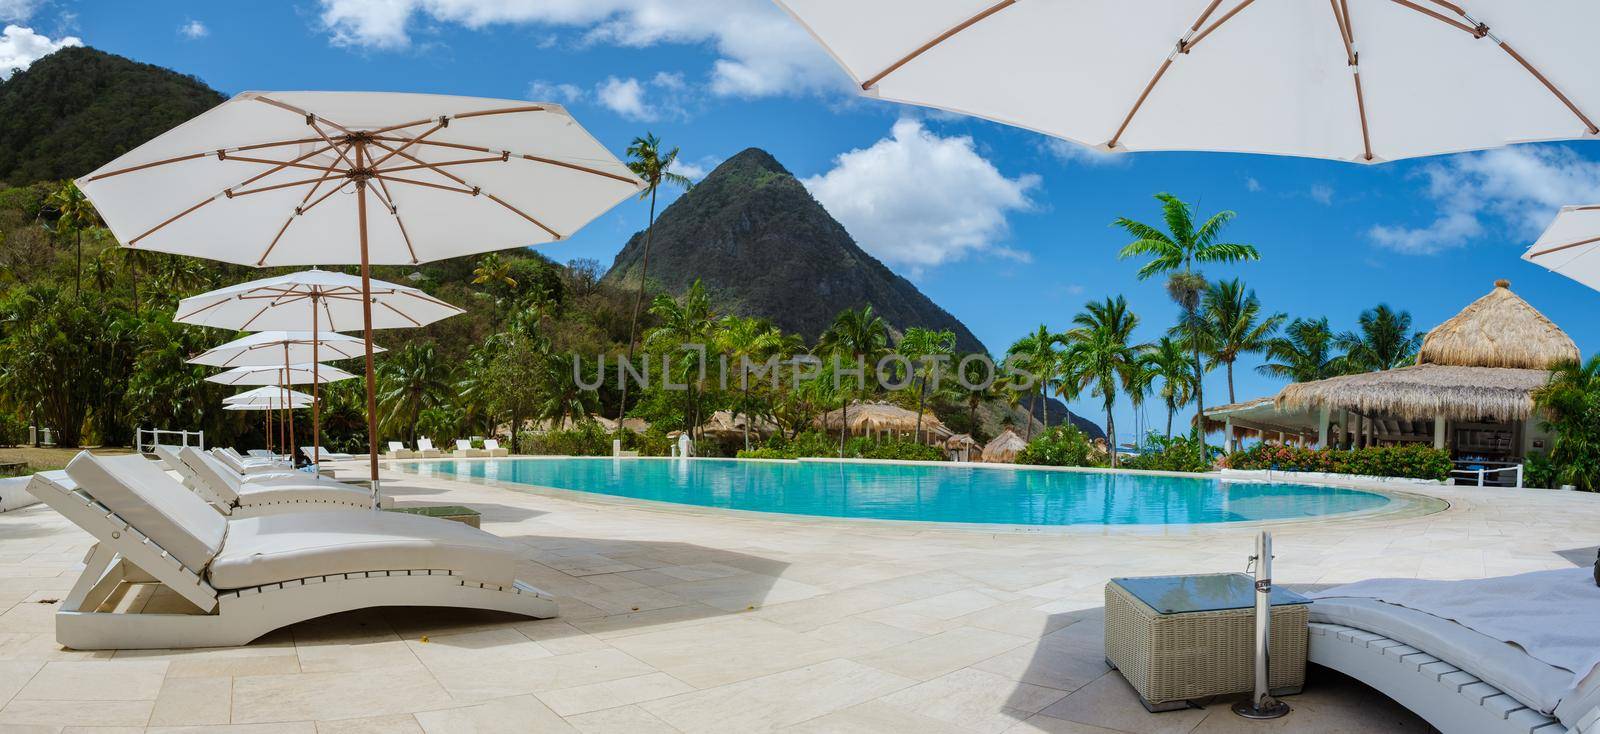 Sugar beach Saint Lucia ,white tropical beach palm trees and luxury beach chairs St Lucia Caribbean by fokkebok